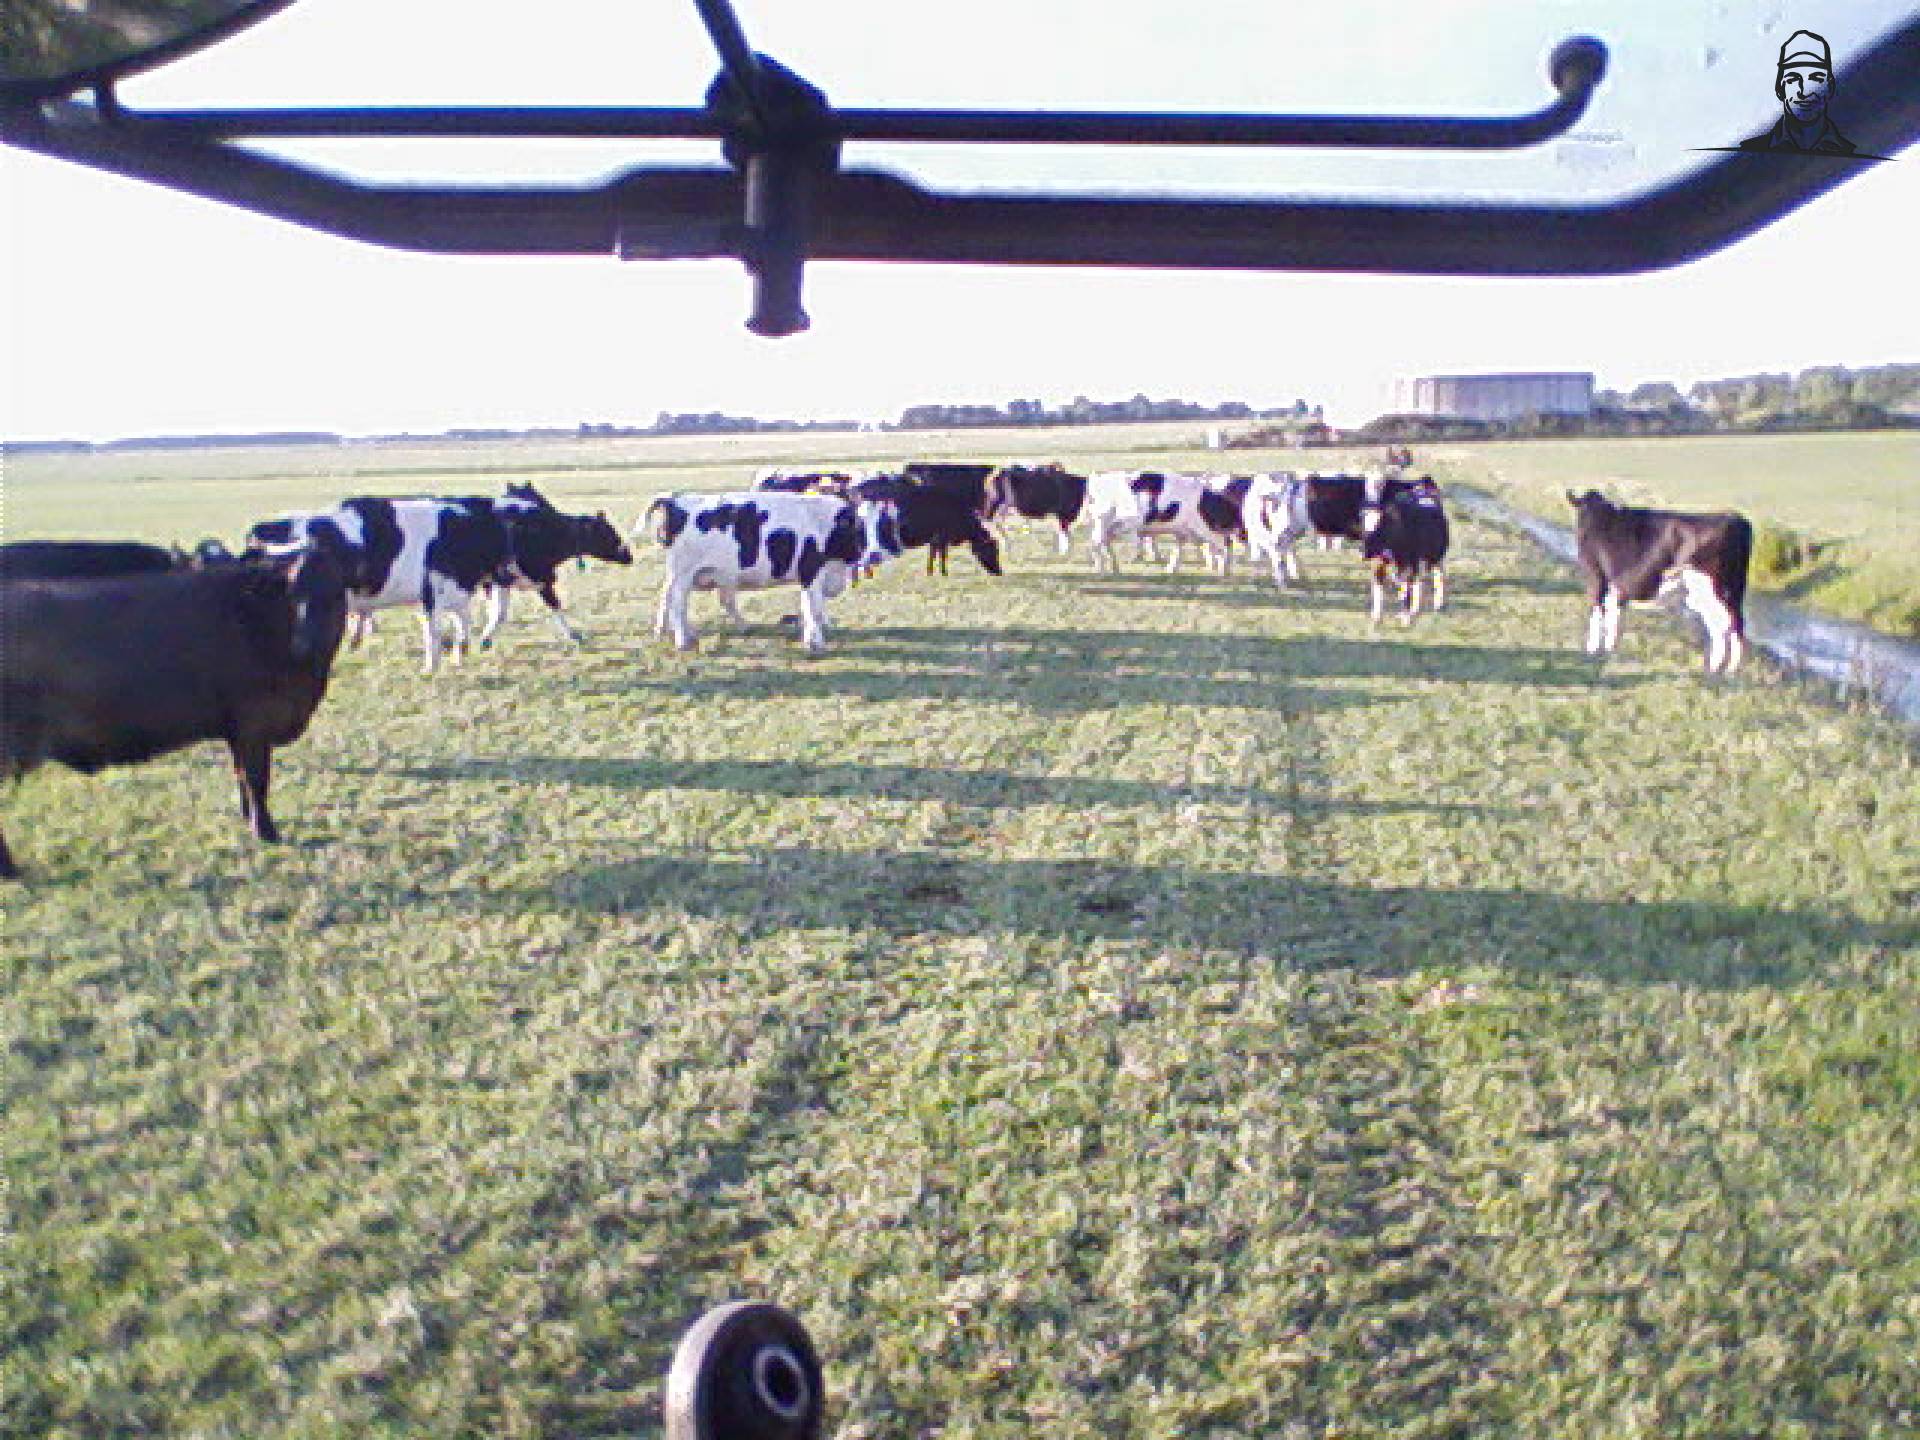 koeien stonden raar te kijken toen er een koe in de sloot zat van eelko